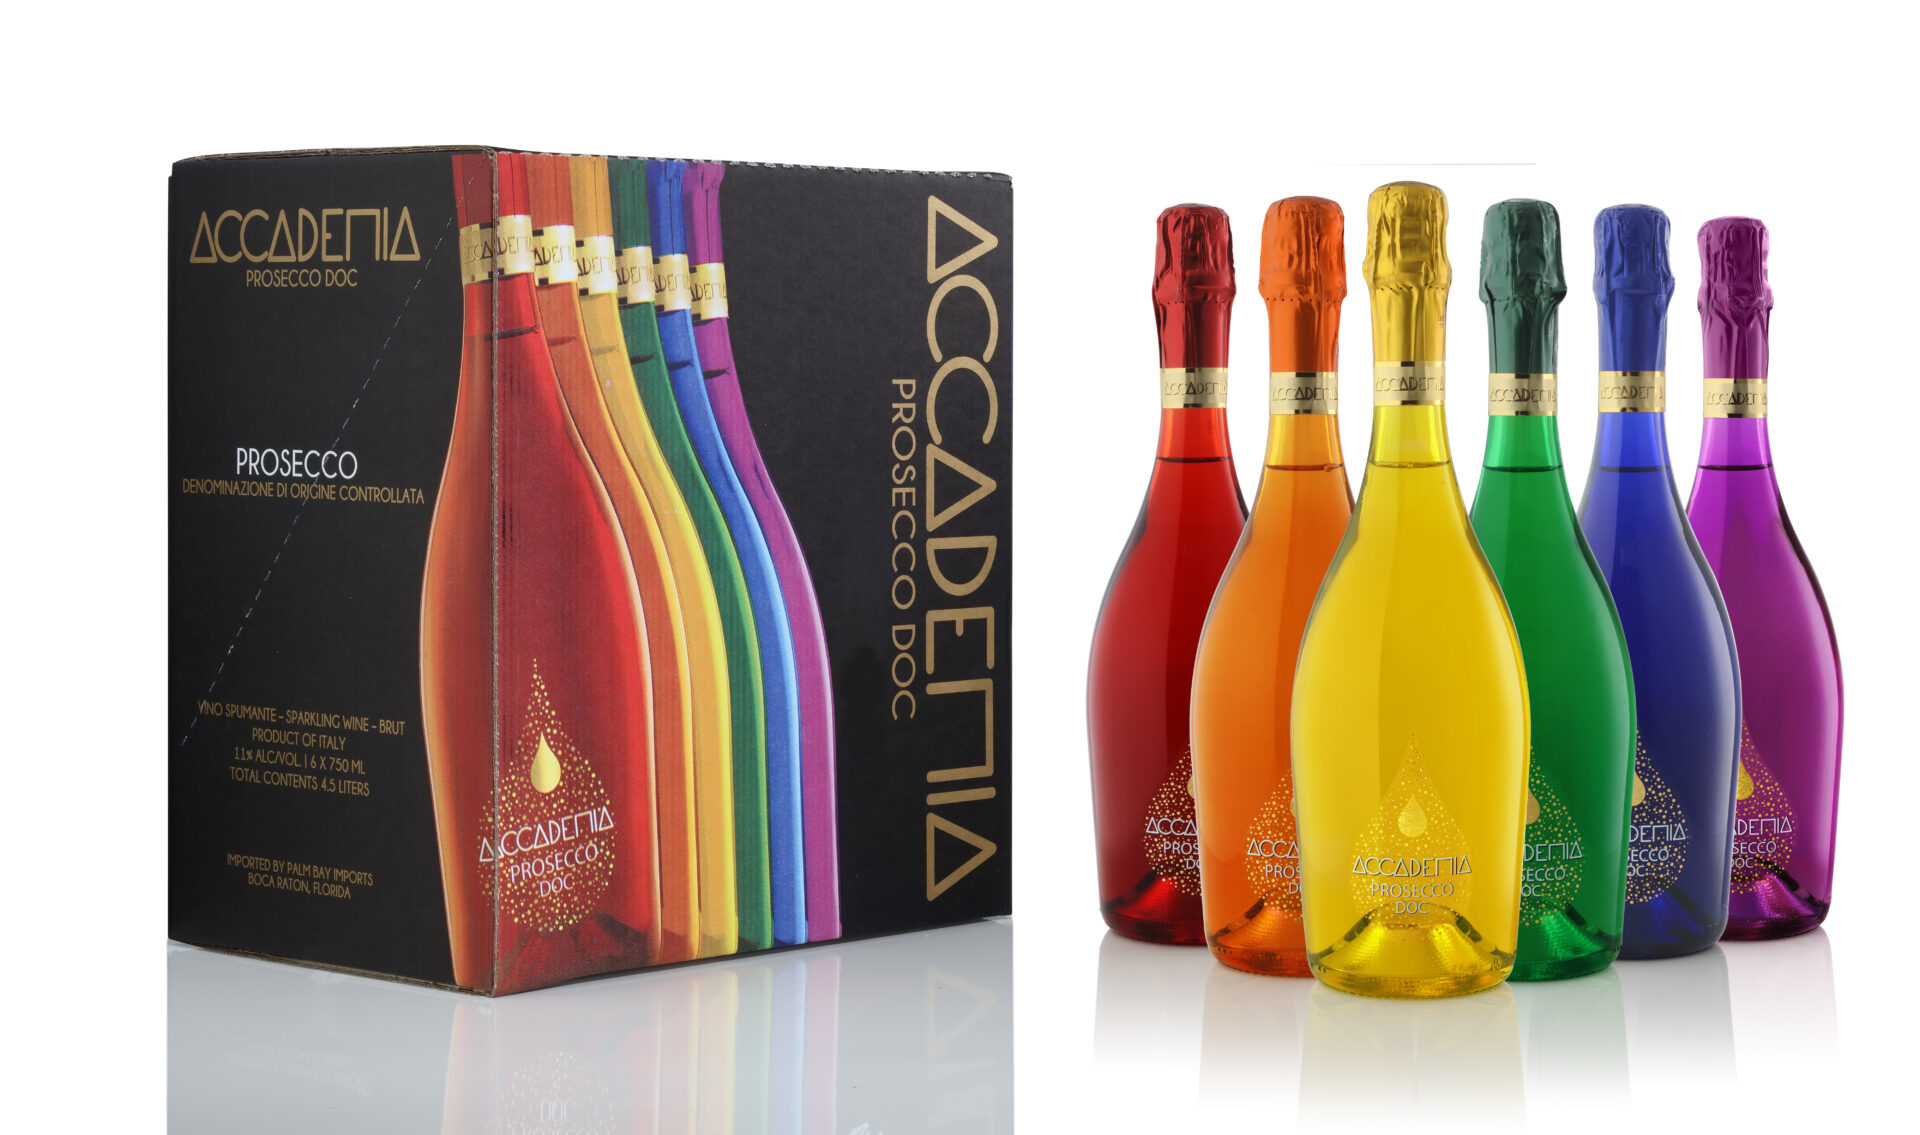 Bottega SpA's Accademia Prosecco Rainbow Collection celebrates the LGBTQ+ community / Courtesy Bottega SpA